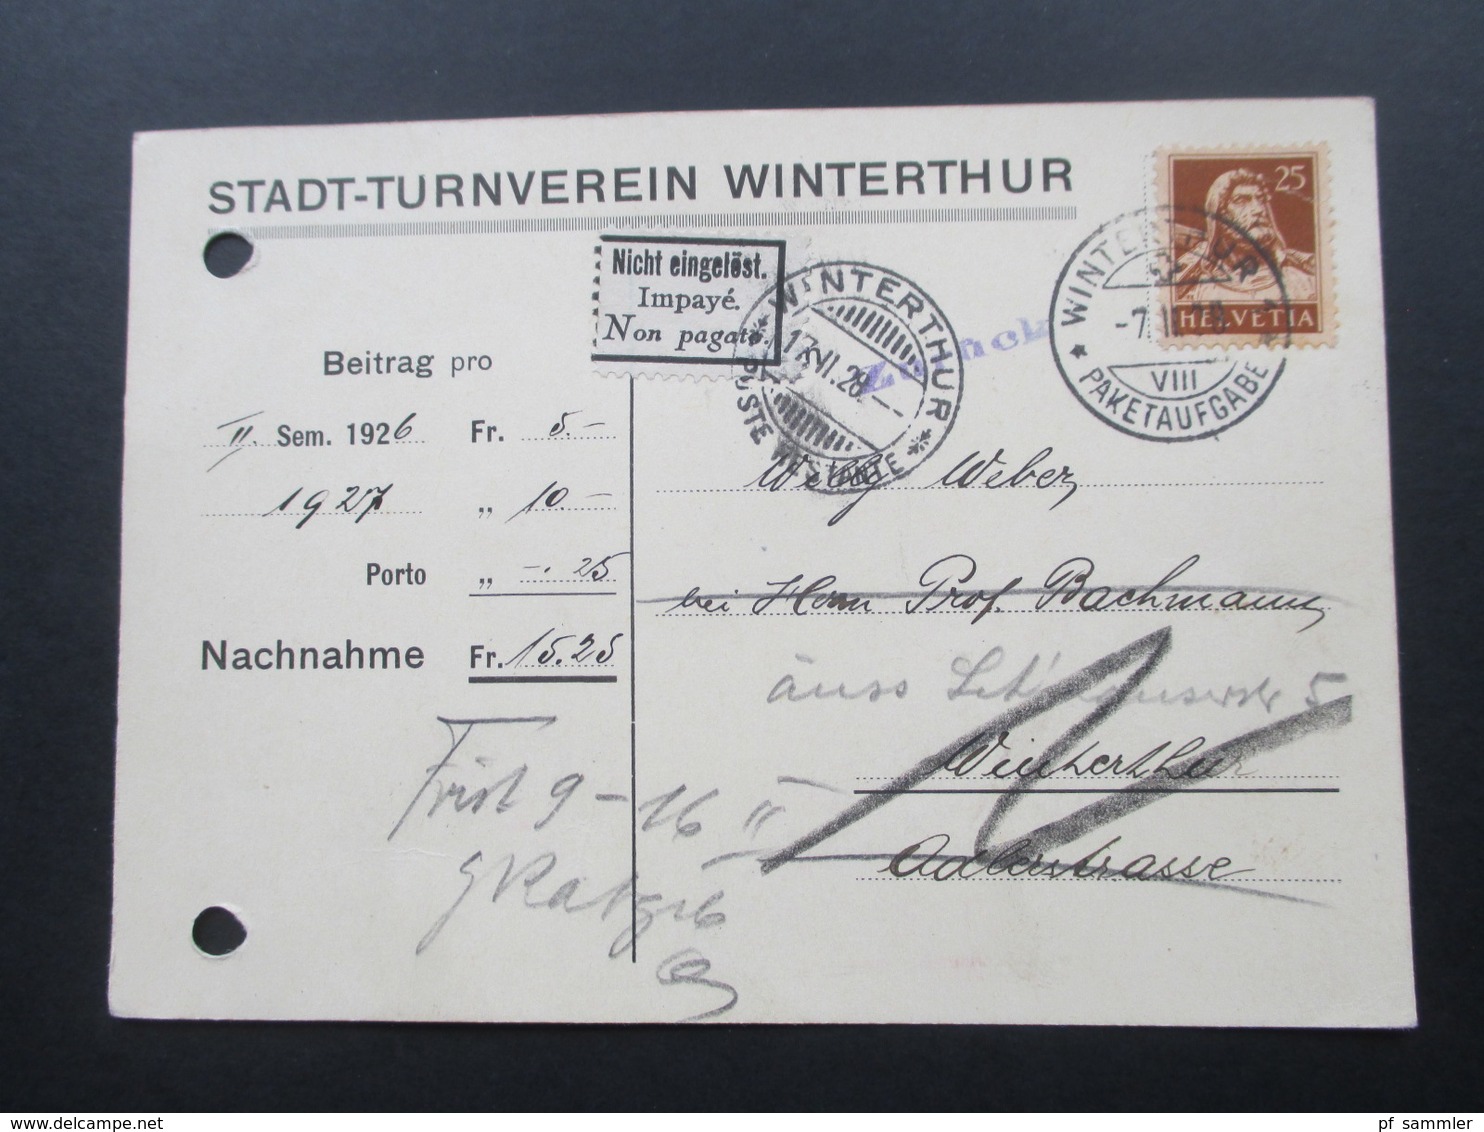 Schweiz 1928 Postkarte Stadt Turnverein Winterthur. Zurück. Nicht Eingelöst. Impaye. Non Pagato. Poste Restante - Briefe U. Dokumente